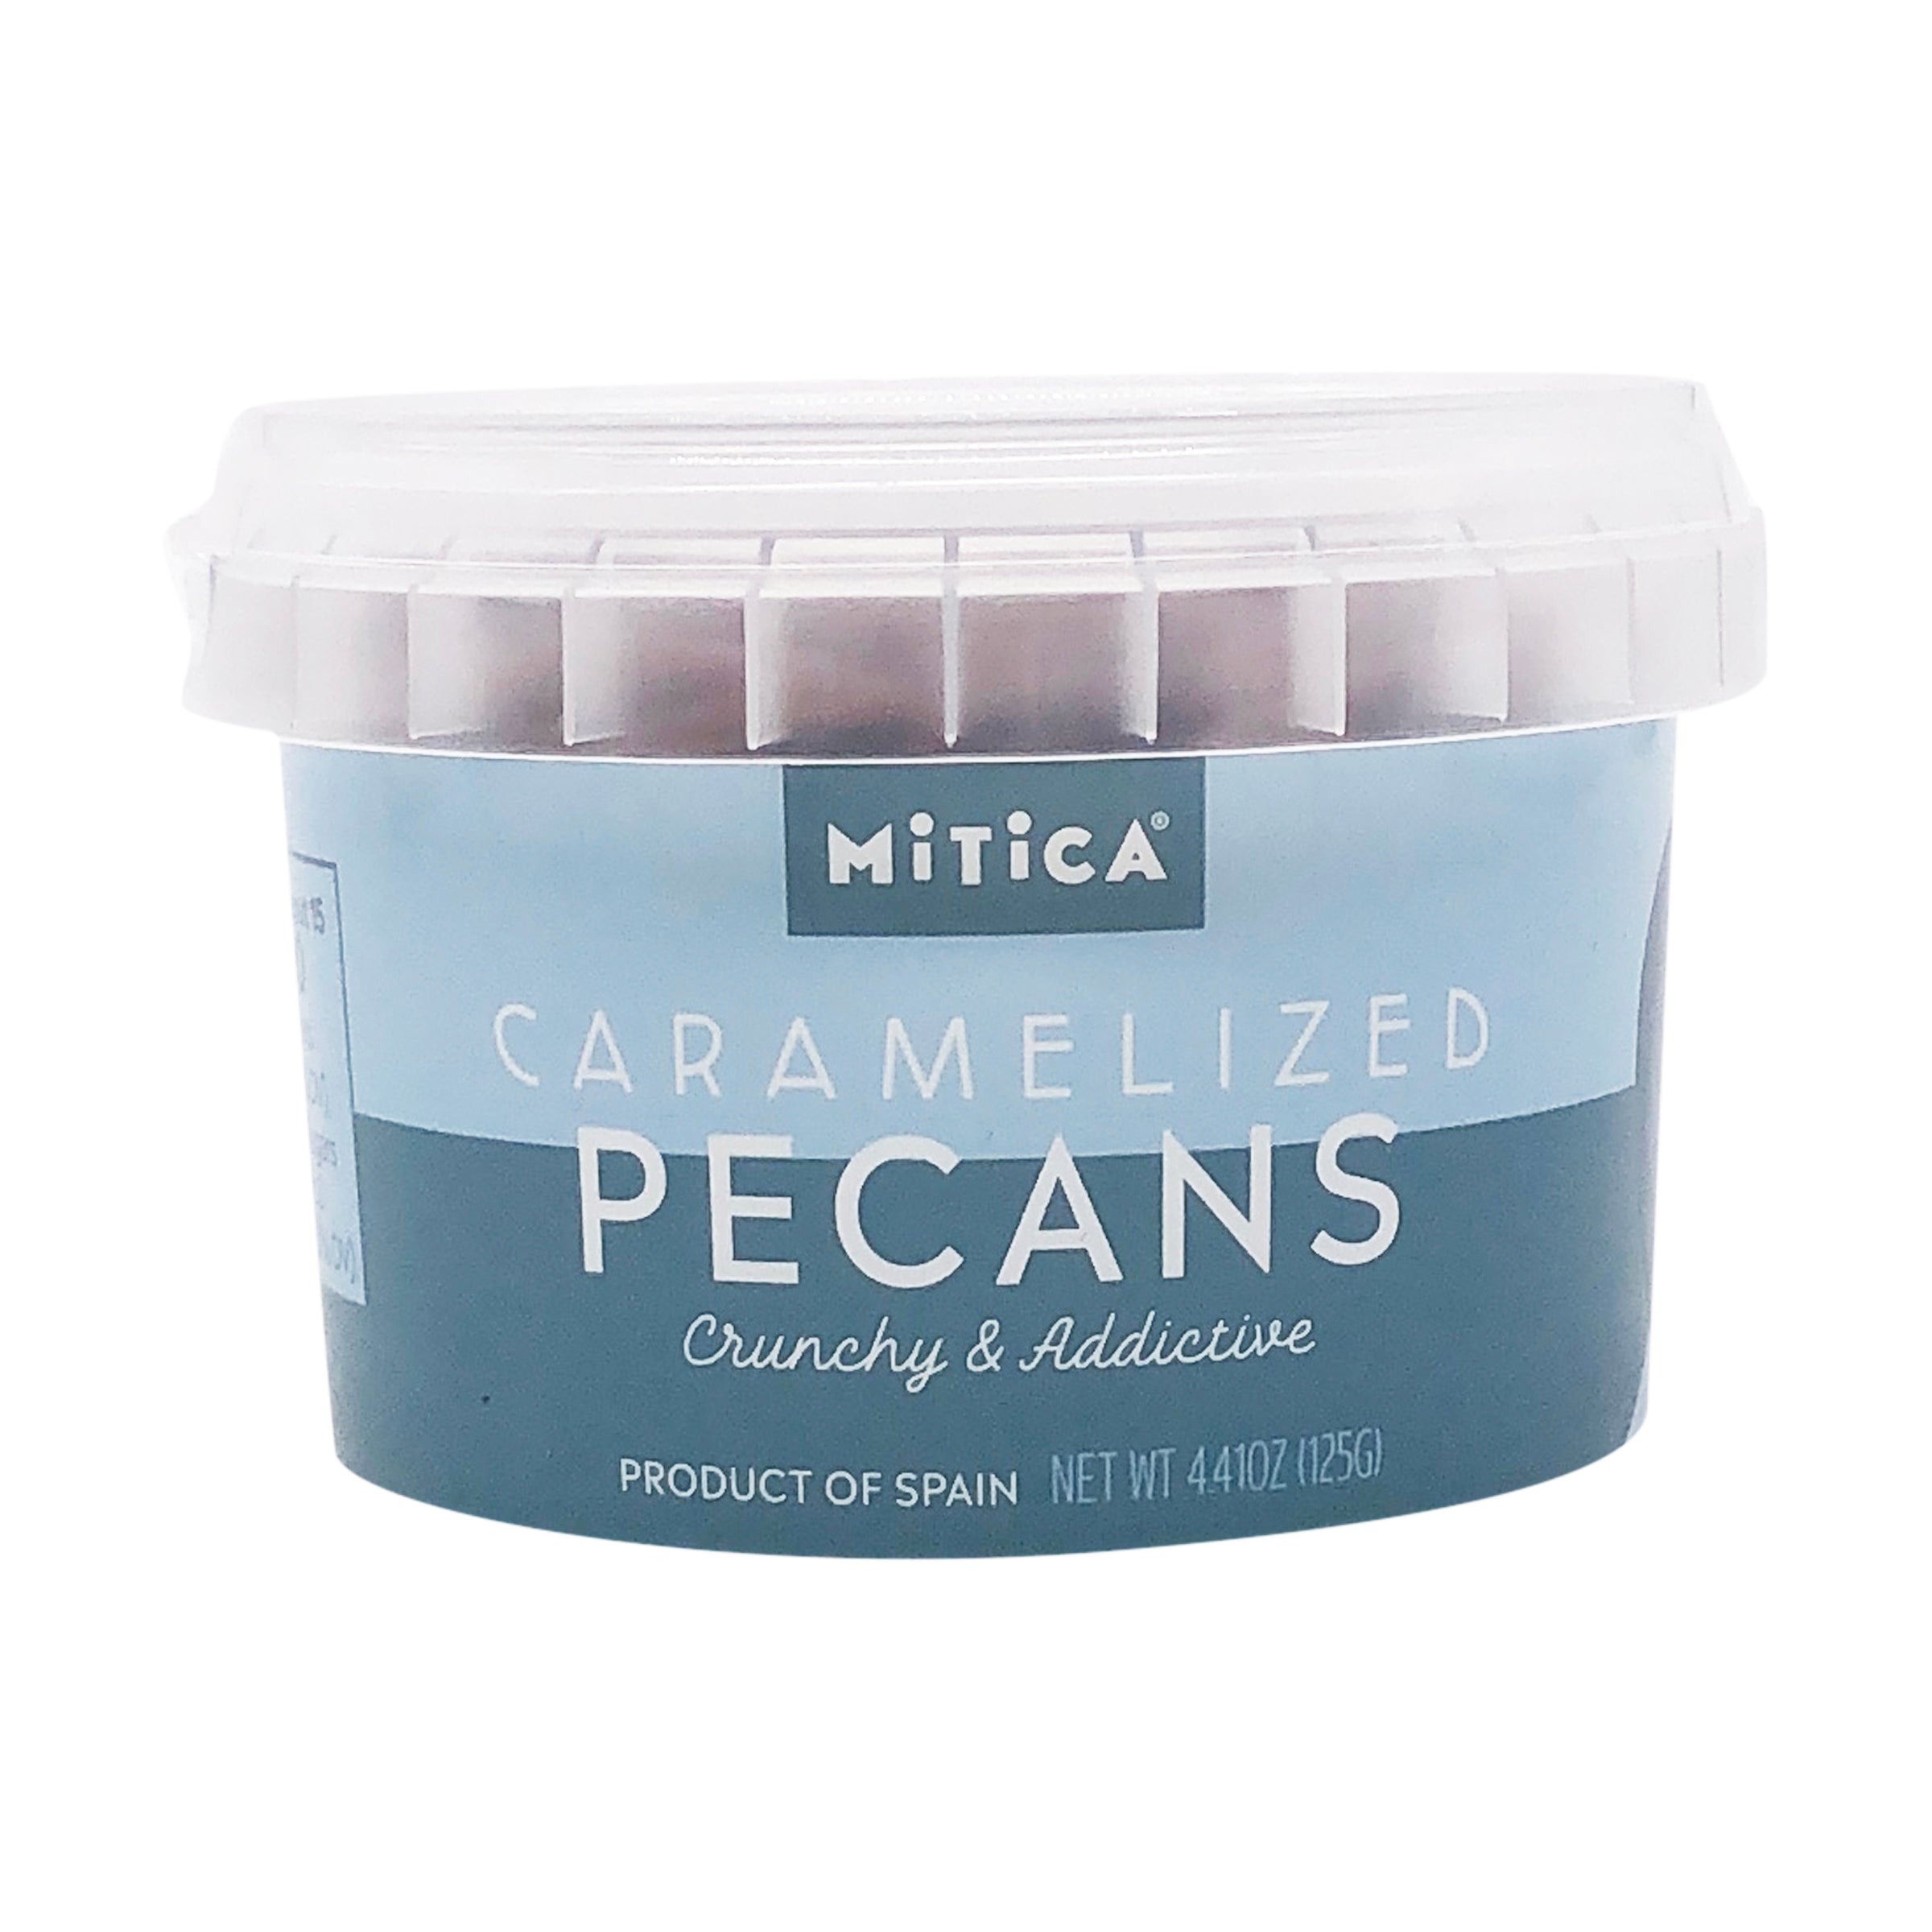 Mitica Caramelized Pecans